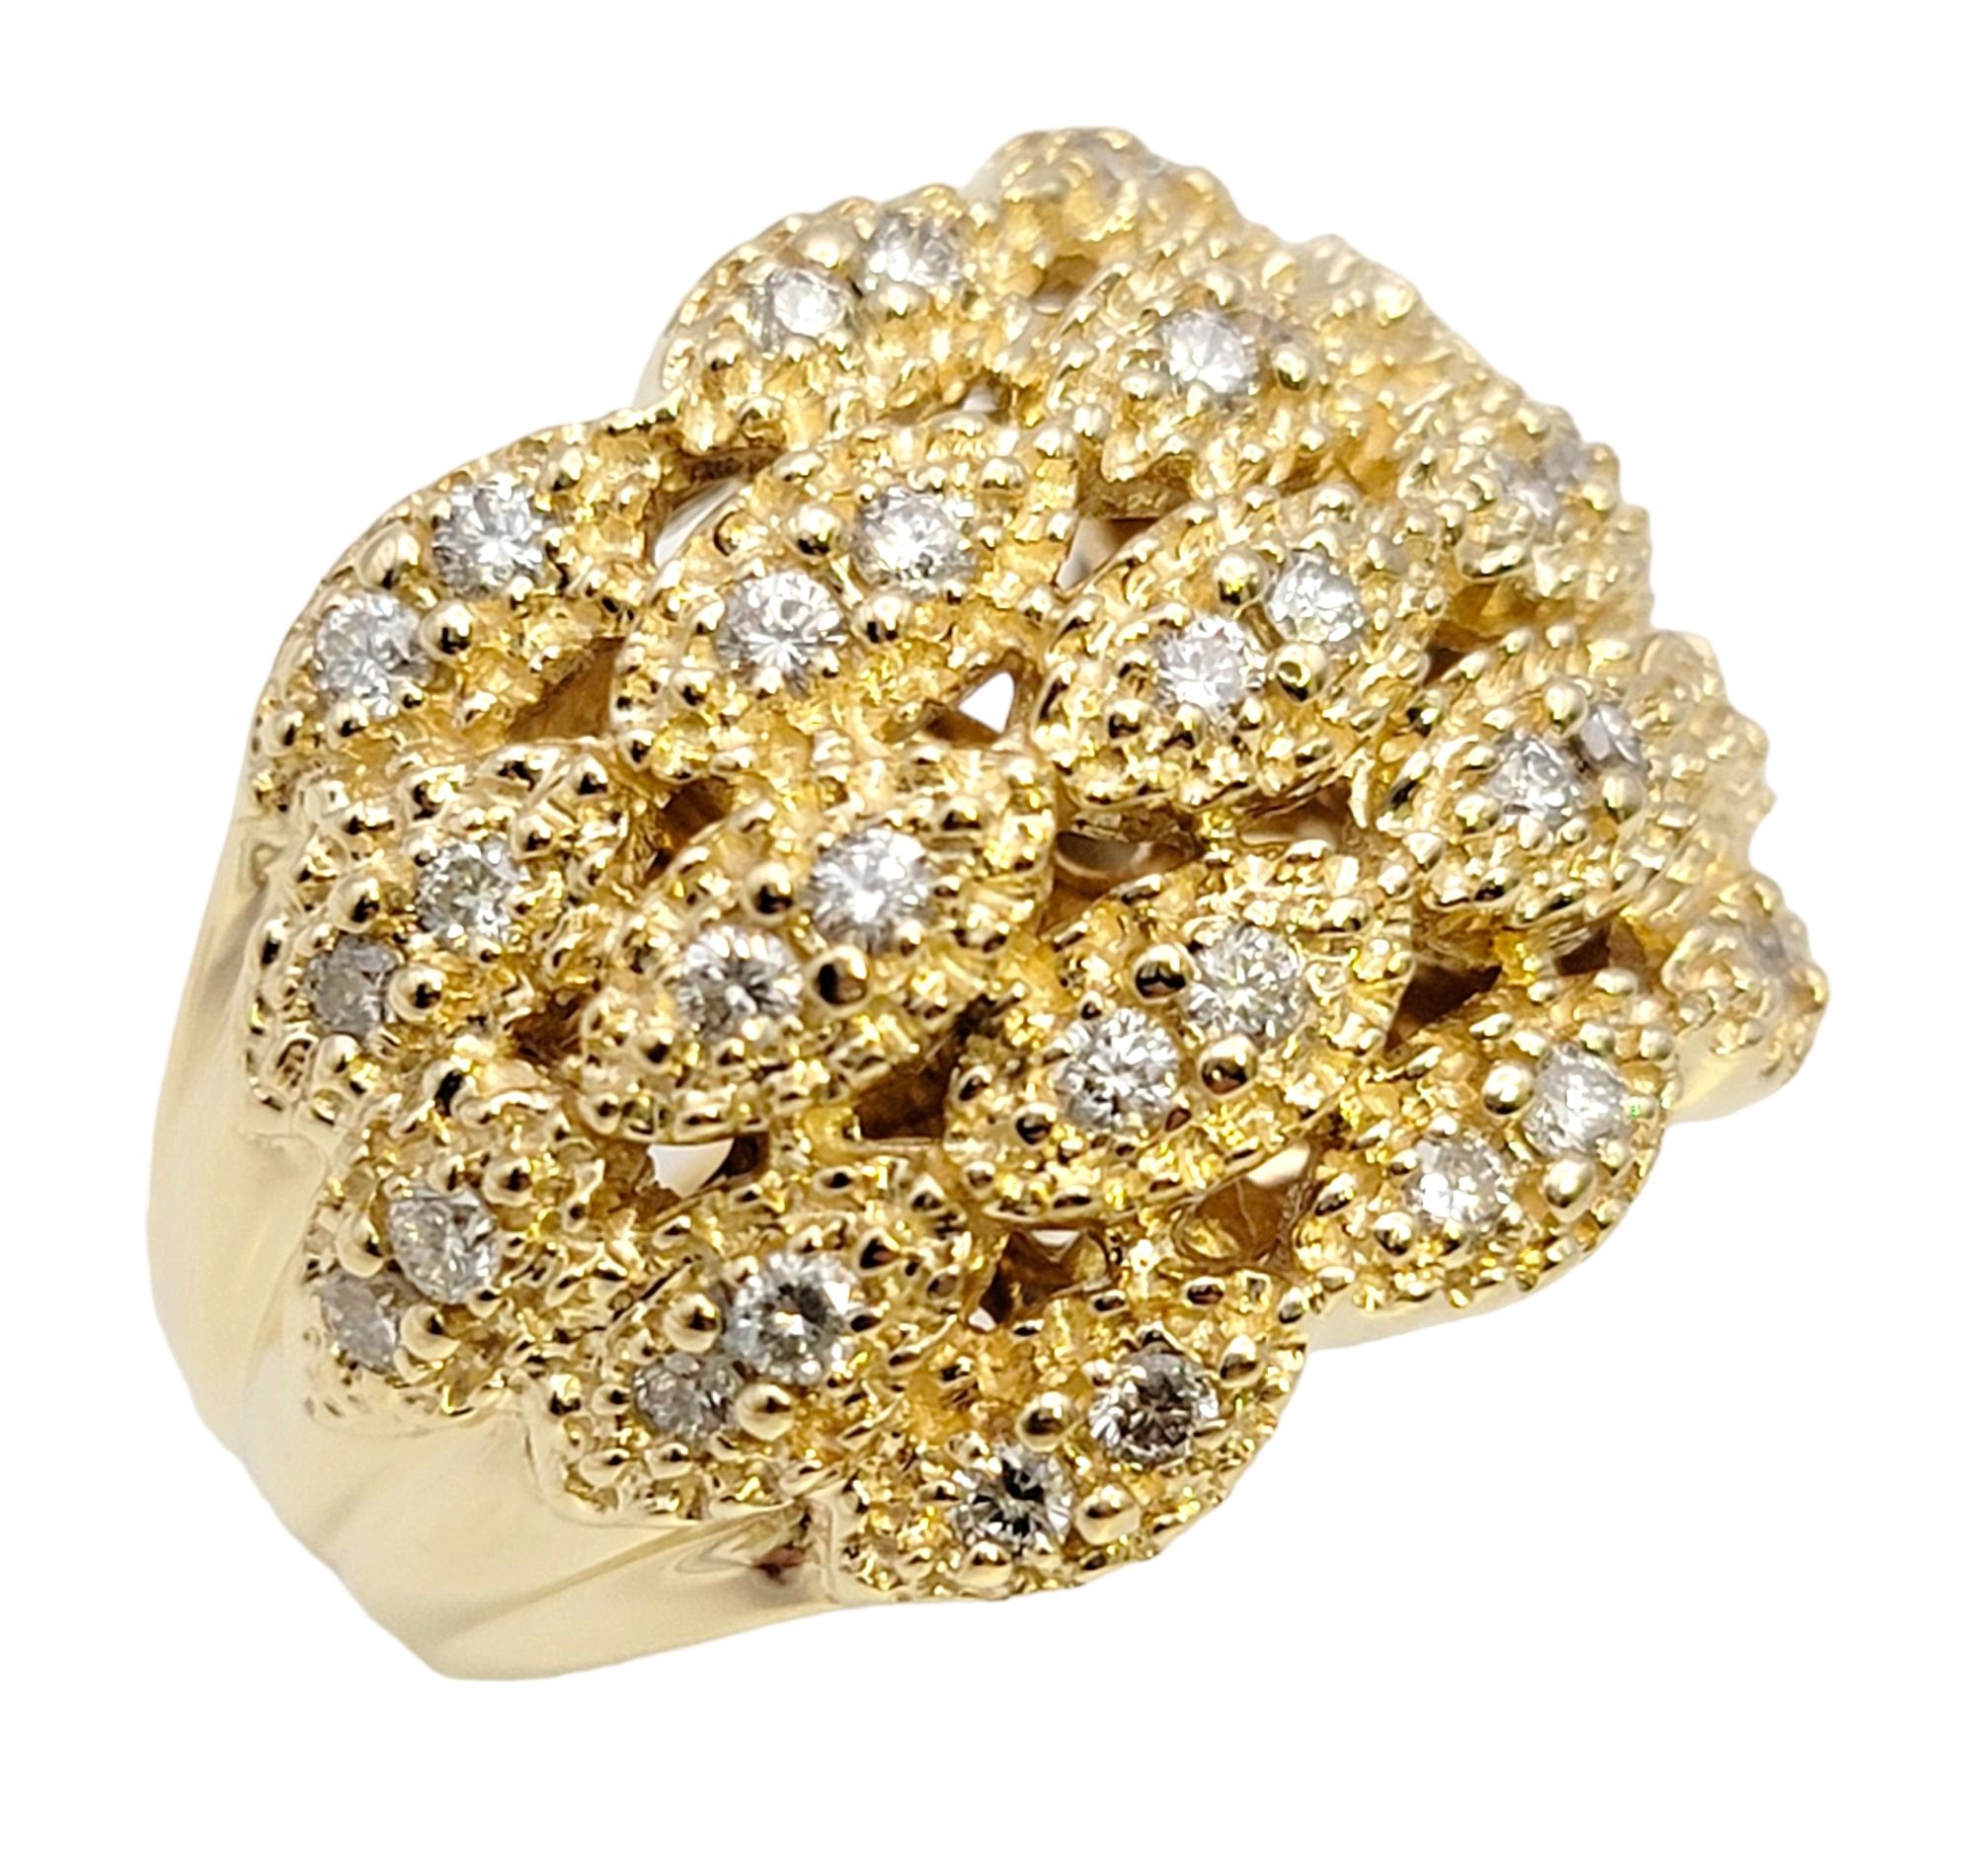 Ringgröße: 6.75

Dieser wunderschön strukturierte Diamant-Kuppelring von Sonia B. Designs bringt den Finger zum Strahlen. Die schimmernden Steine füllen Ihren Finger von einem Ende zum anderen mit sensationellem Funkeln und machen ihn zu einem